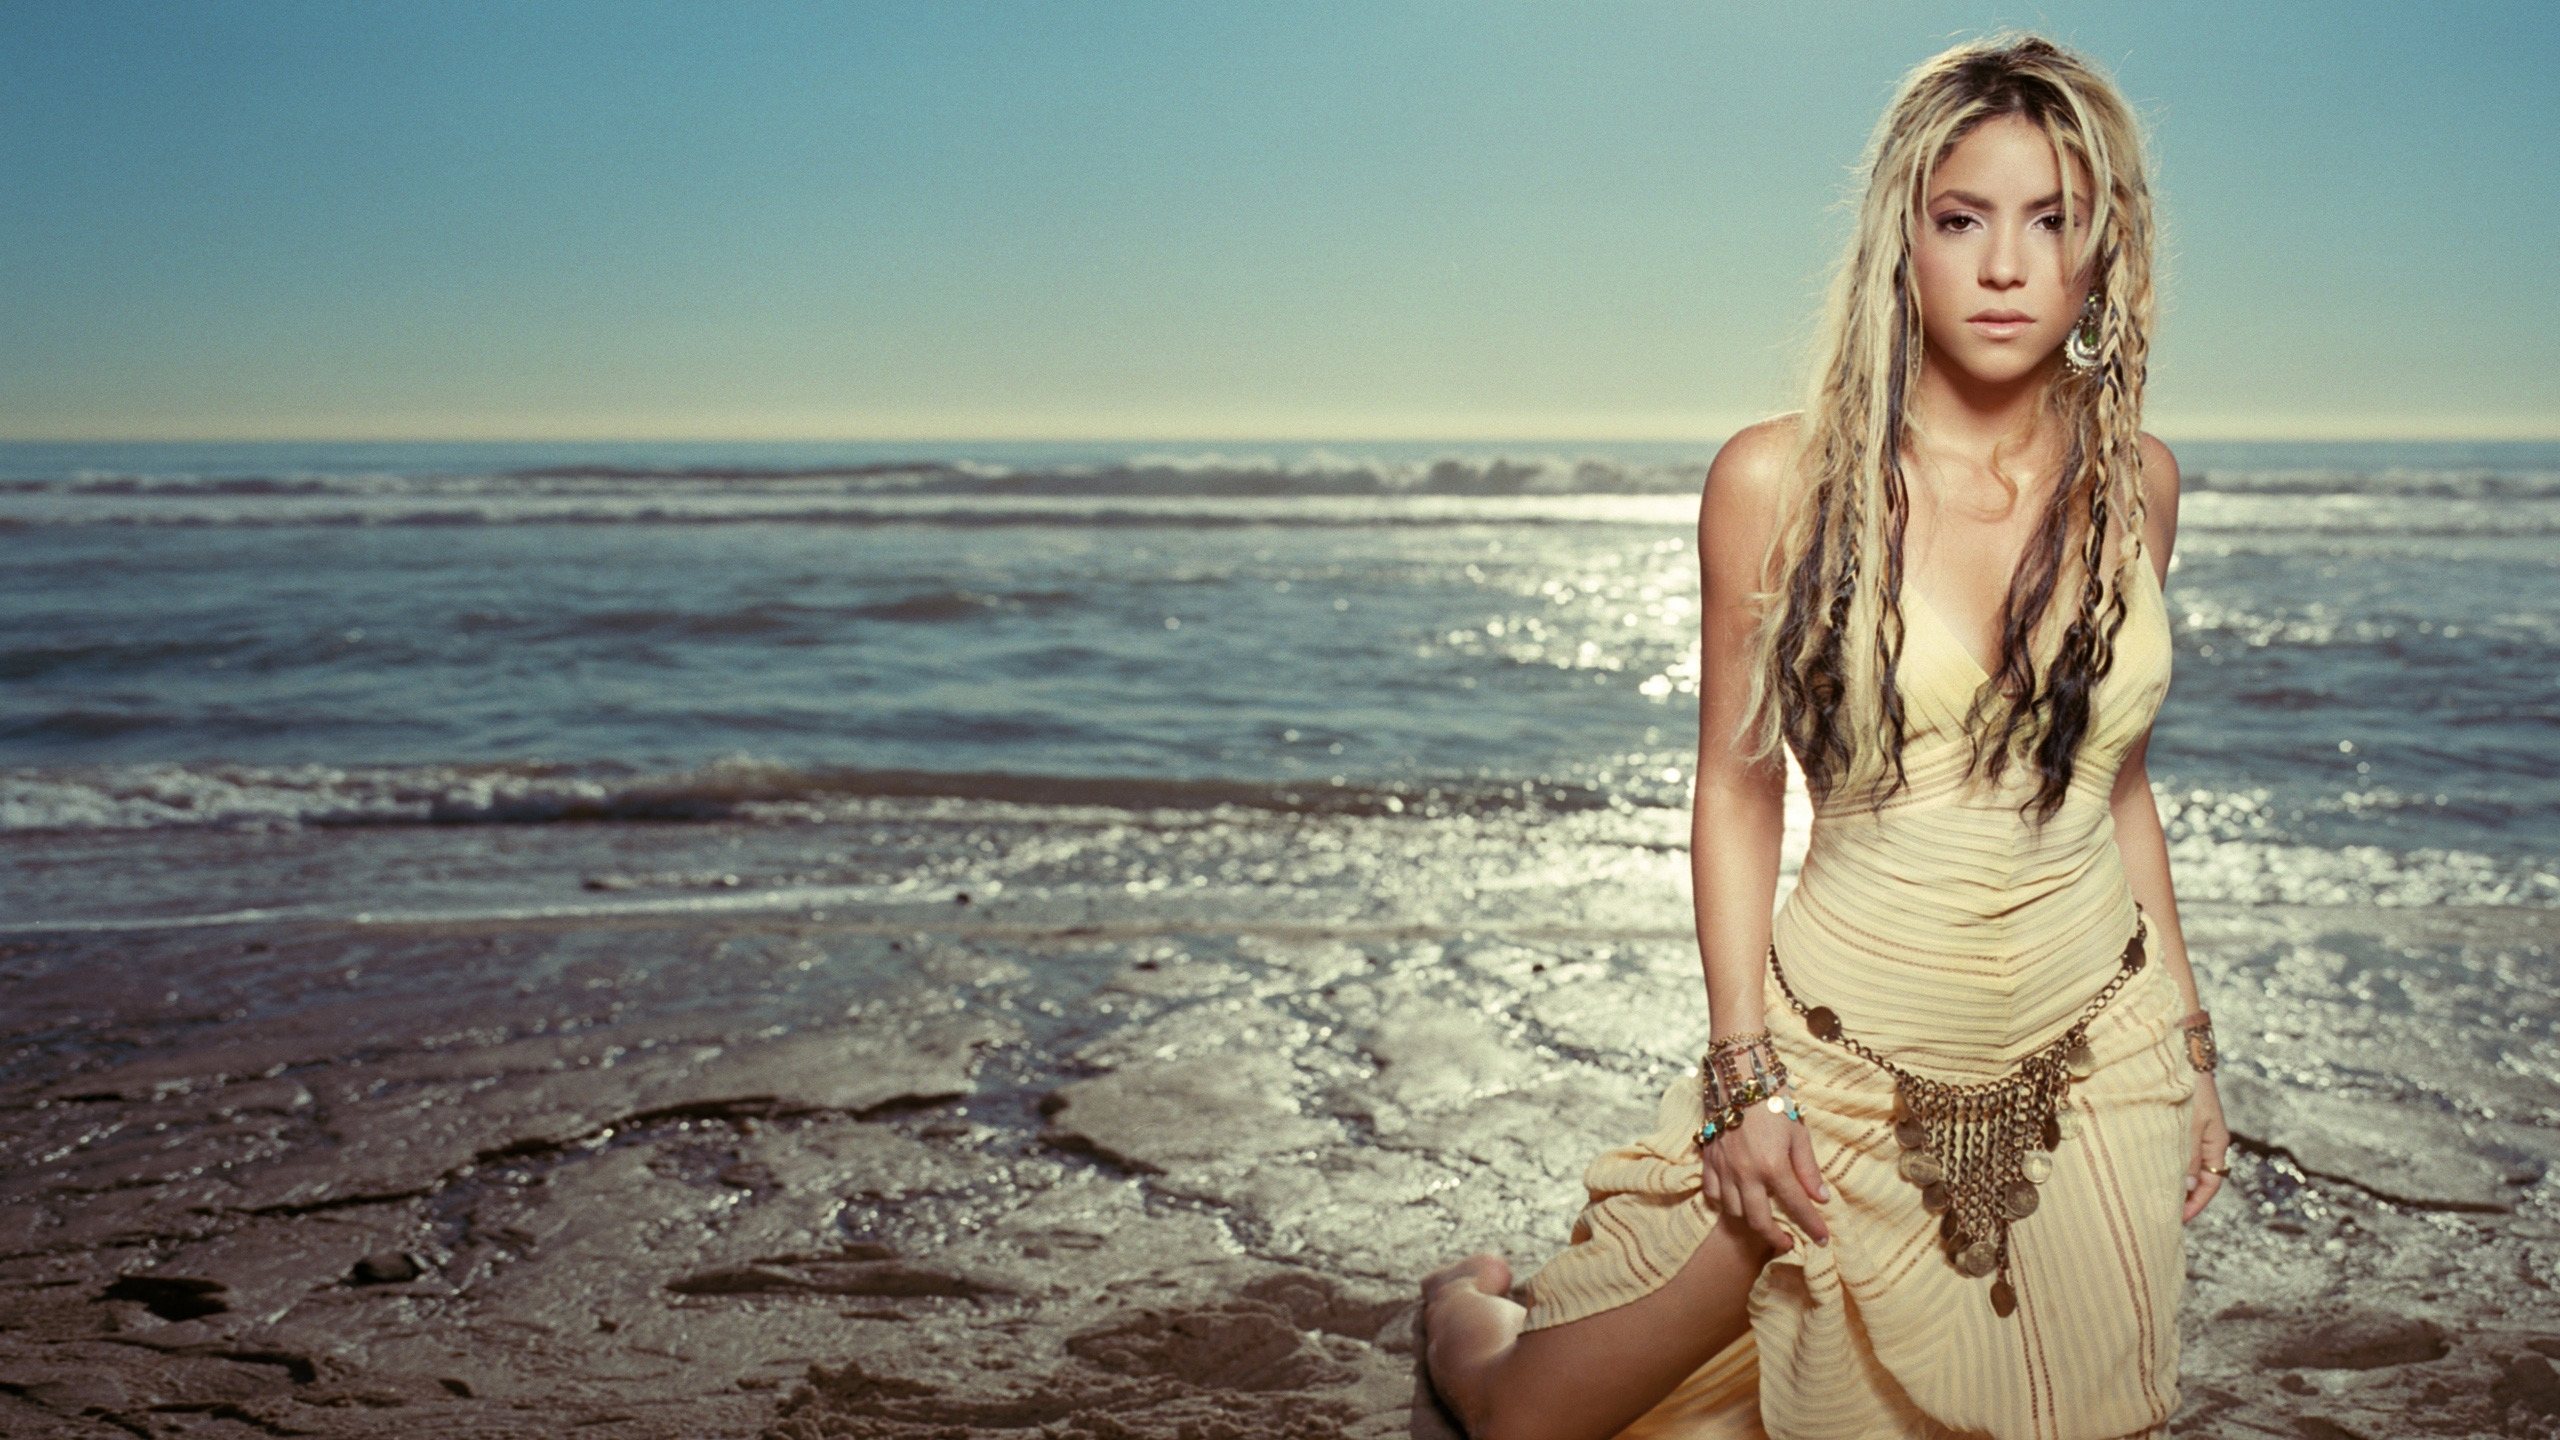 Shakira Isabel Mebarak Ripoll for 2560x1440 HDTV resolution